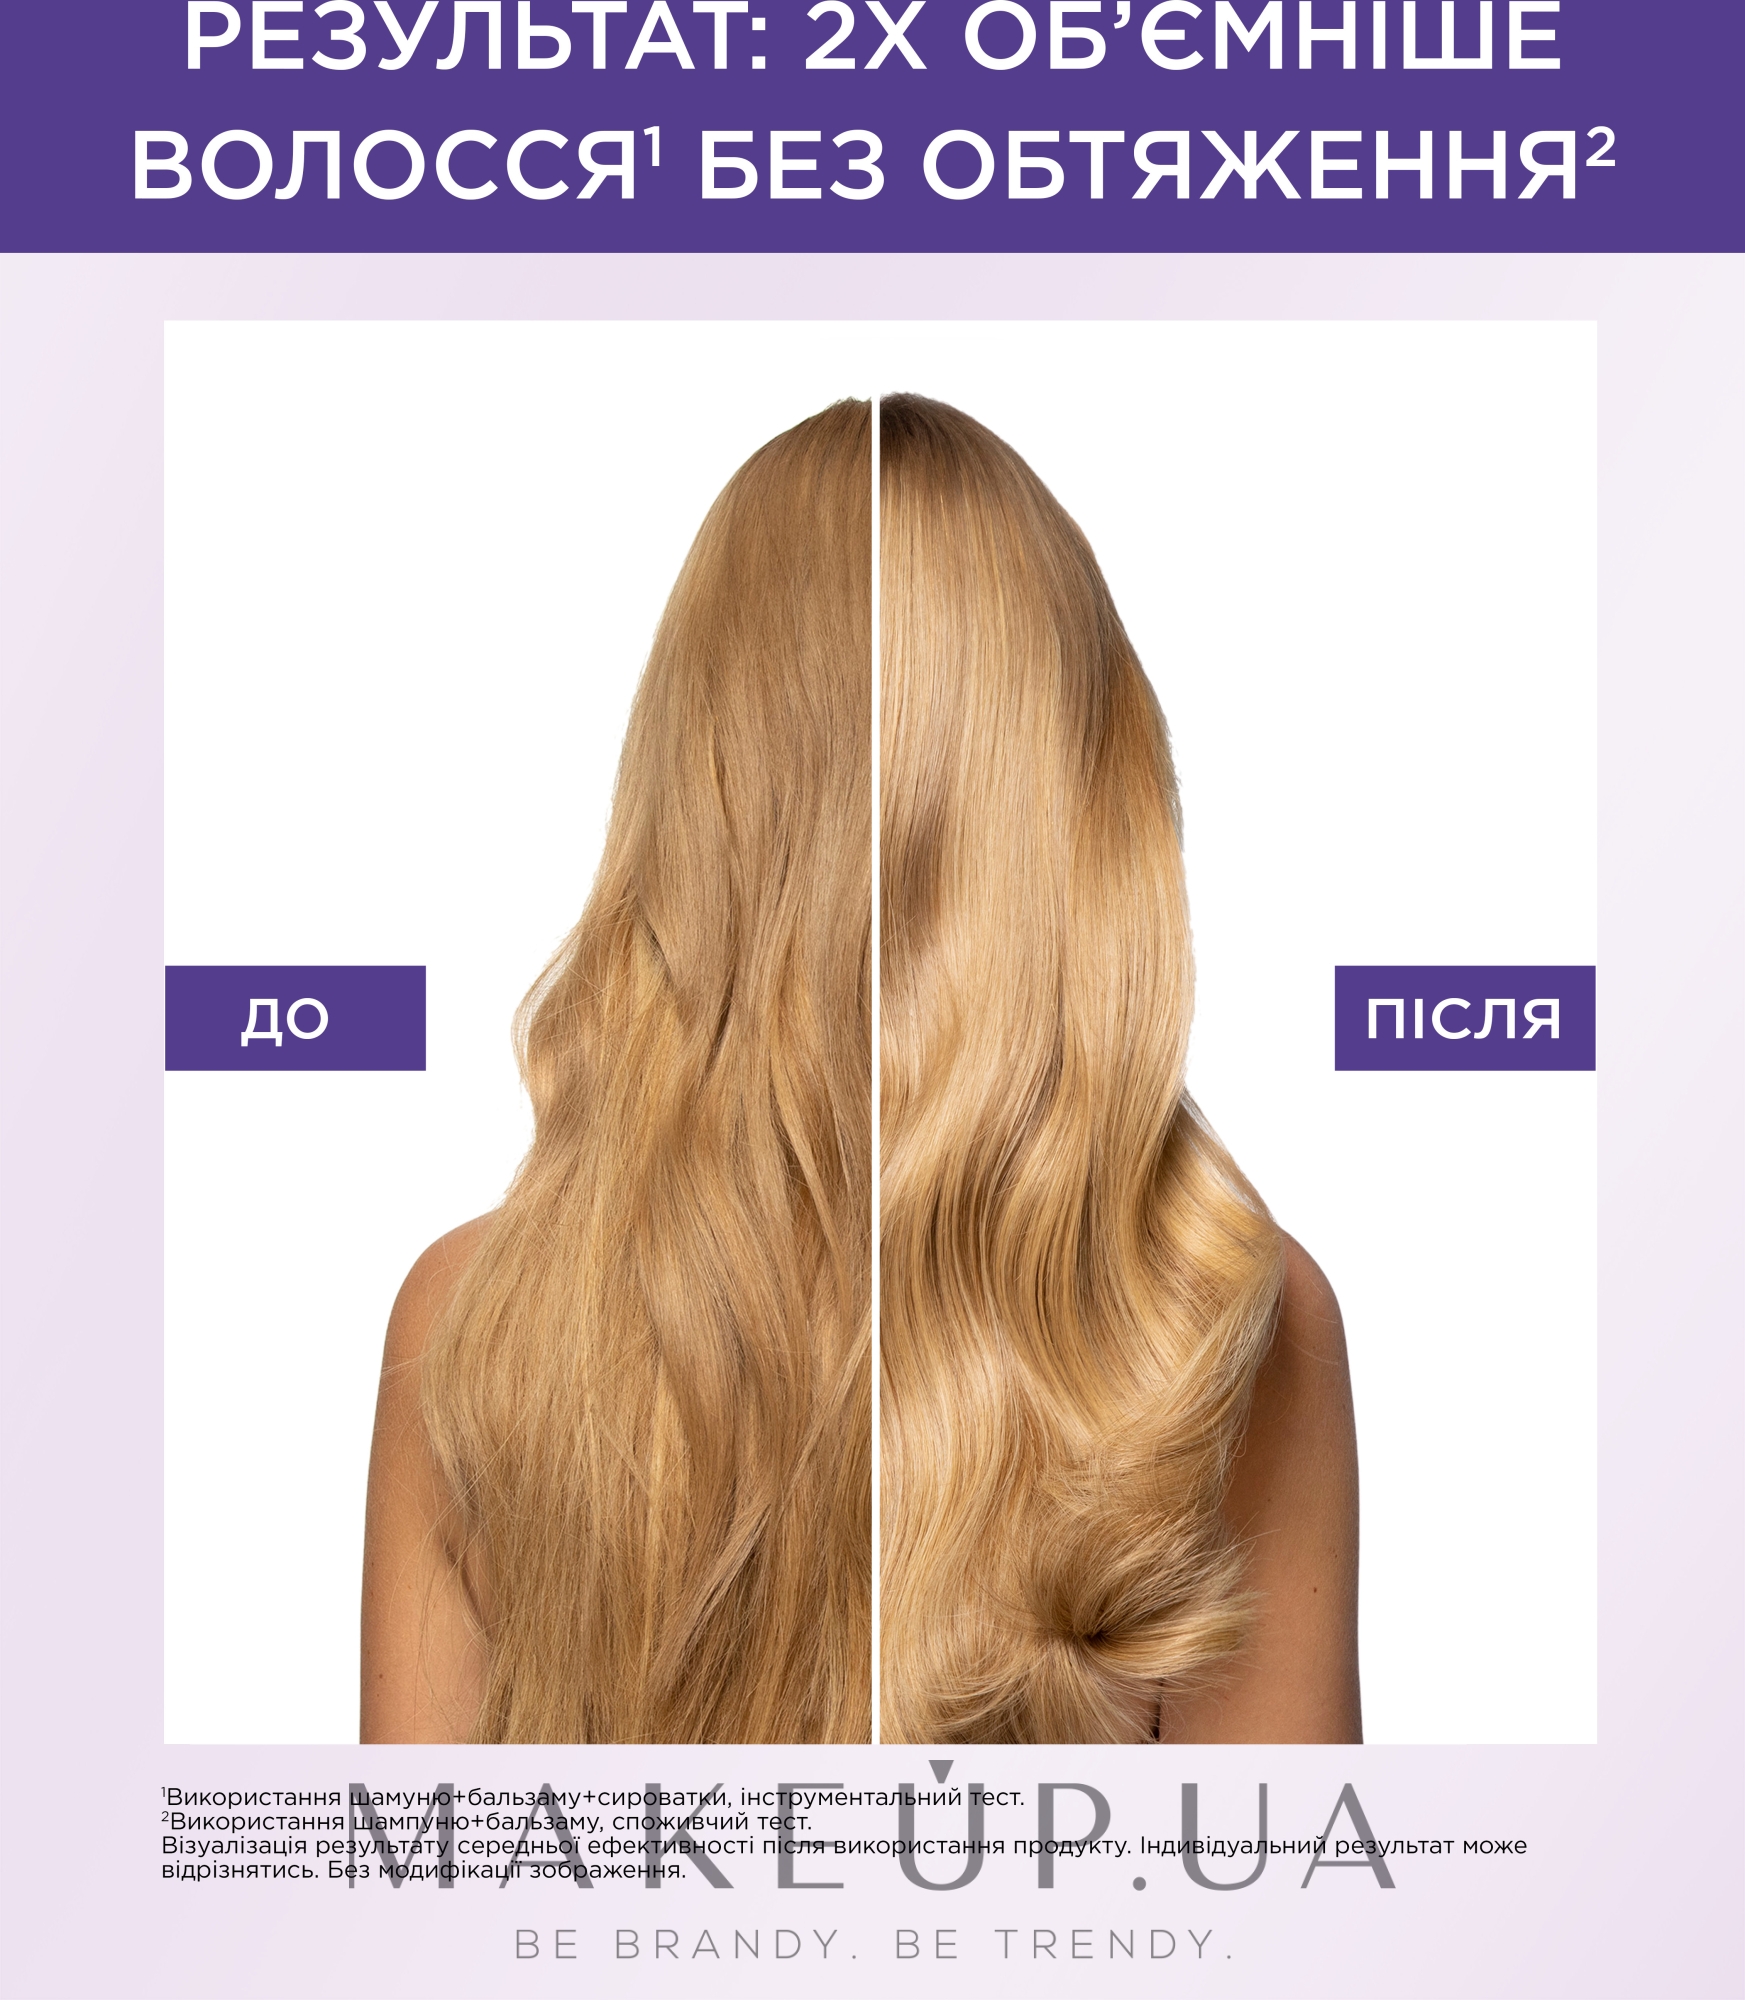 Шампунь-філер з гіалуроновою кислотою для волосся, яке потребує зволоження та об'єму